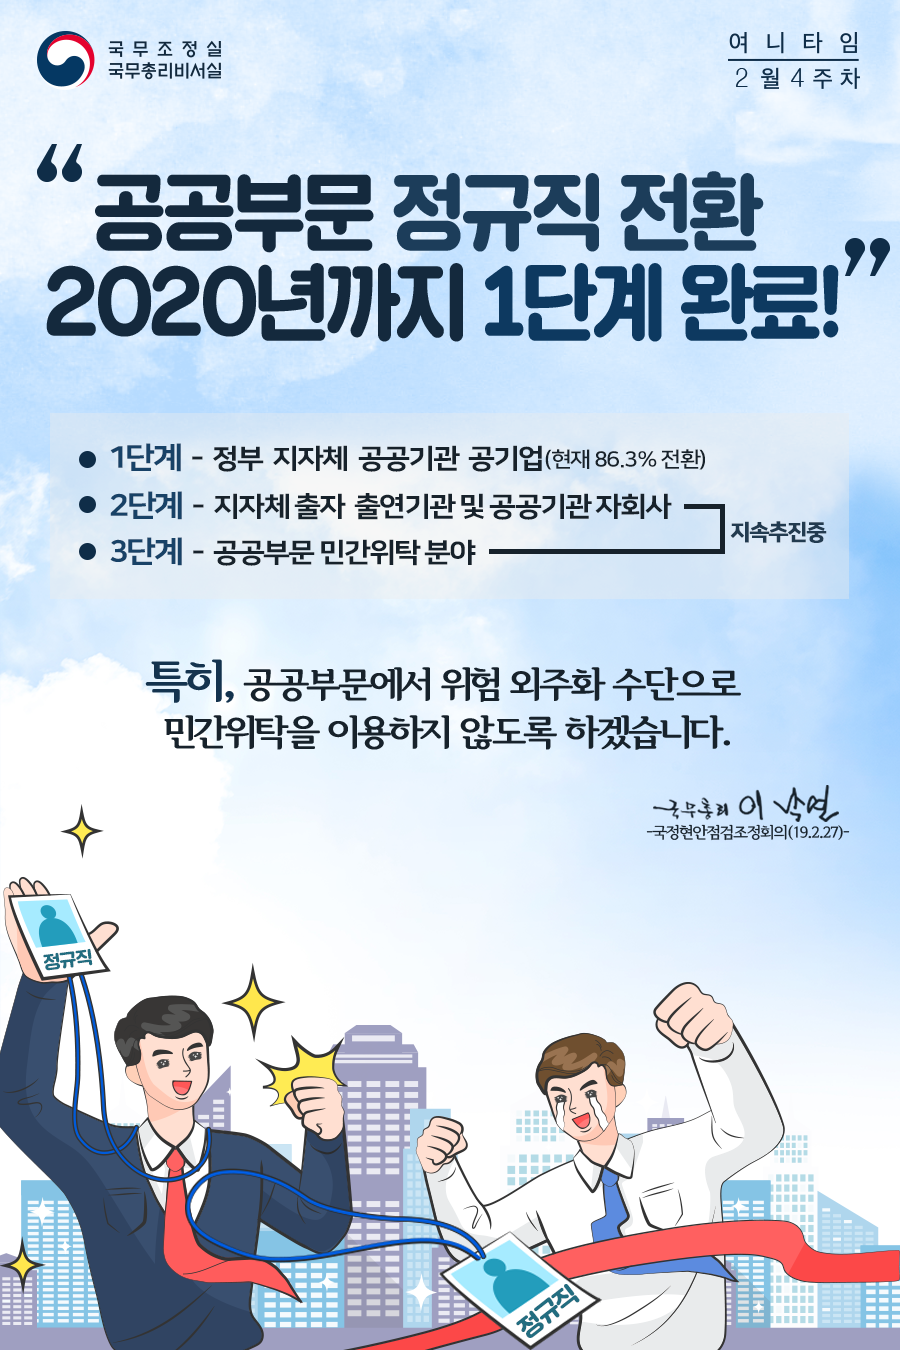 여니타임 2월 4주차_공공부문 정규직 전환 2020년까지 1단계 완료!